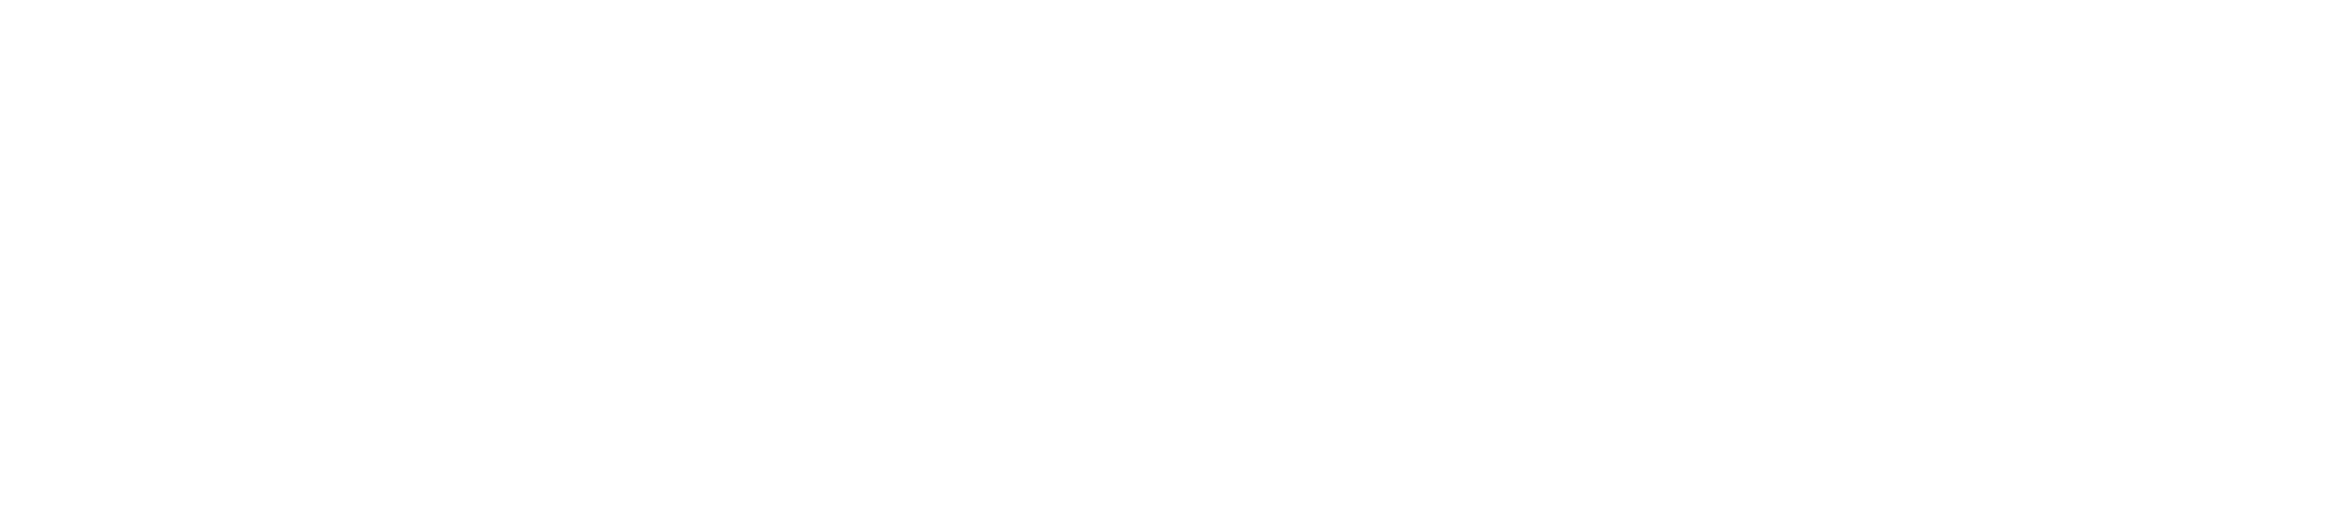 Logo da Sementes Biomatrix